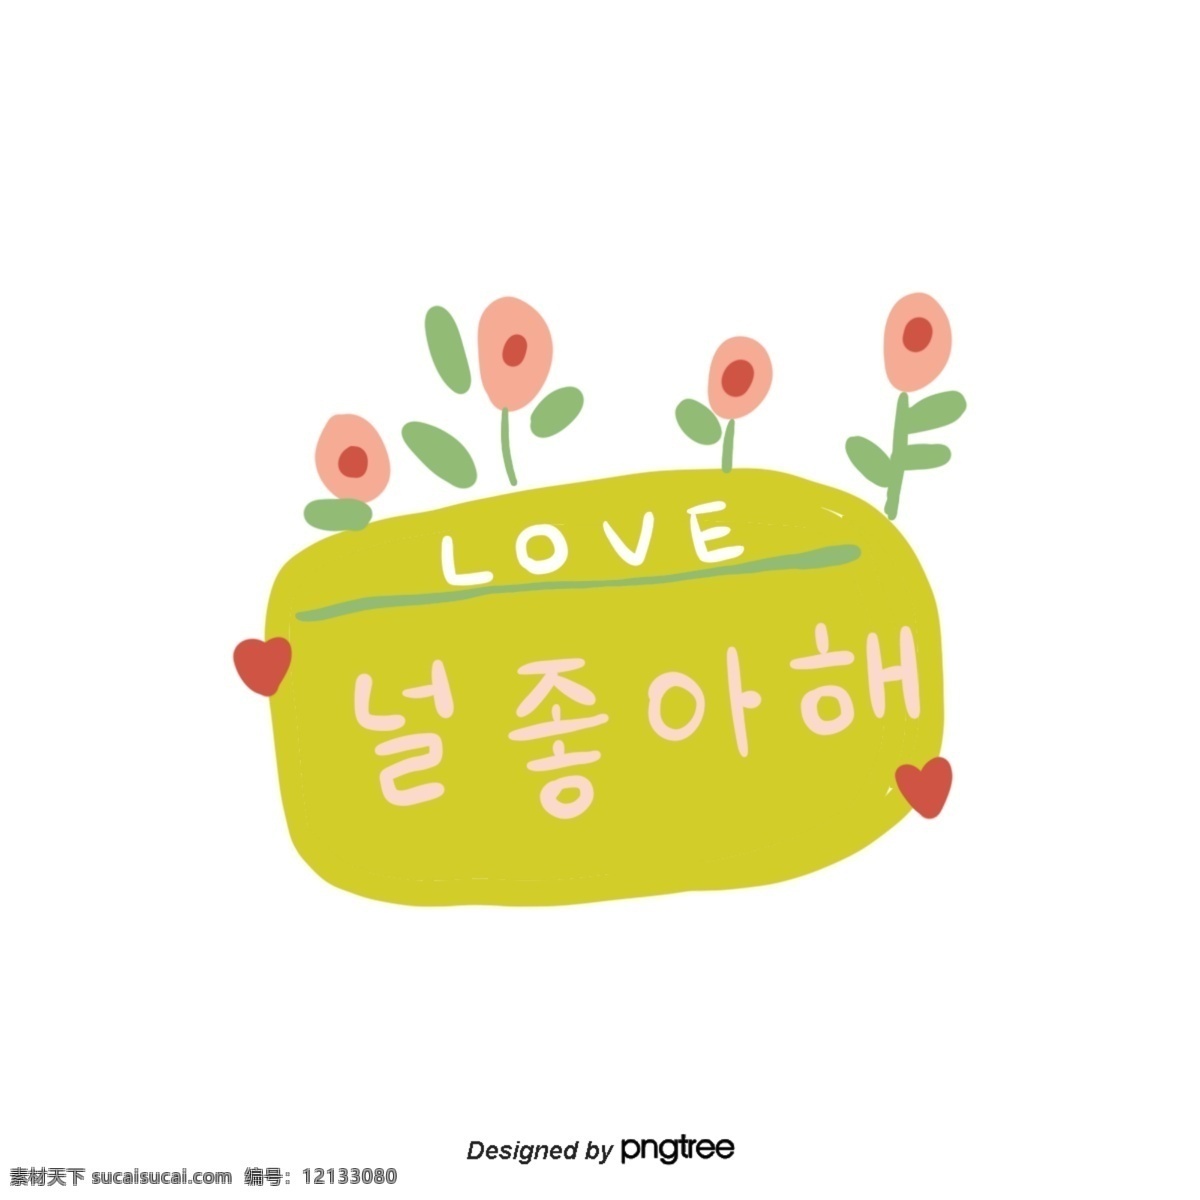 植物 花 爱心 告白 喜欢 我喜欢你 绿色 橘黄色 字体 韩文 手印